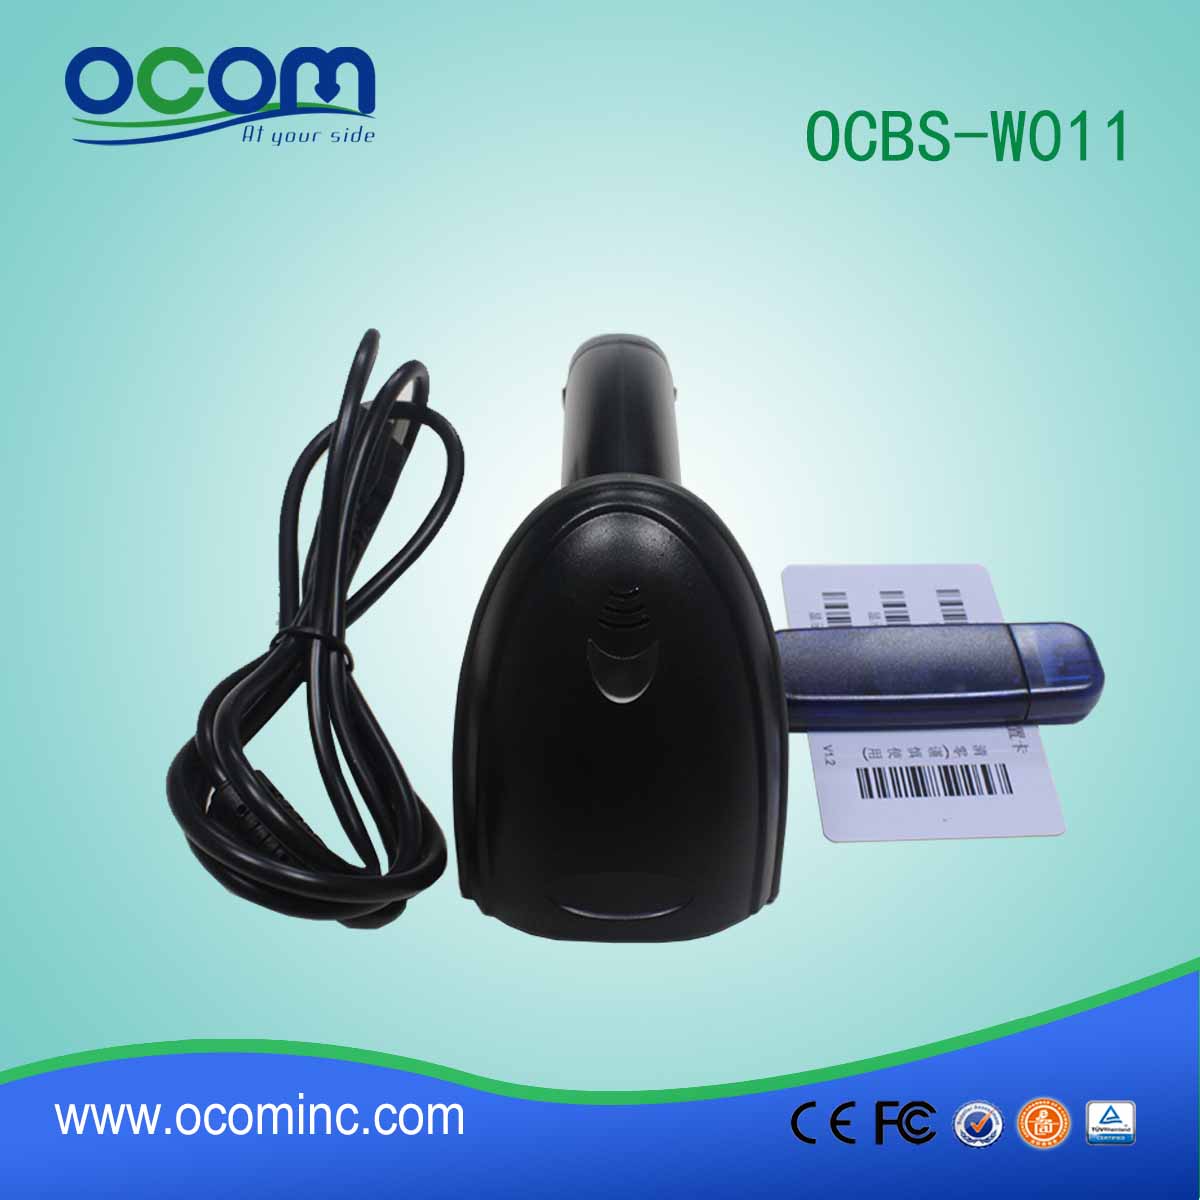 Высокая скорость сканирования USB RF433MHz Wireless Laser сканер штрих-кода (OCBs-W011)